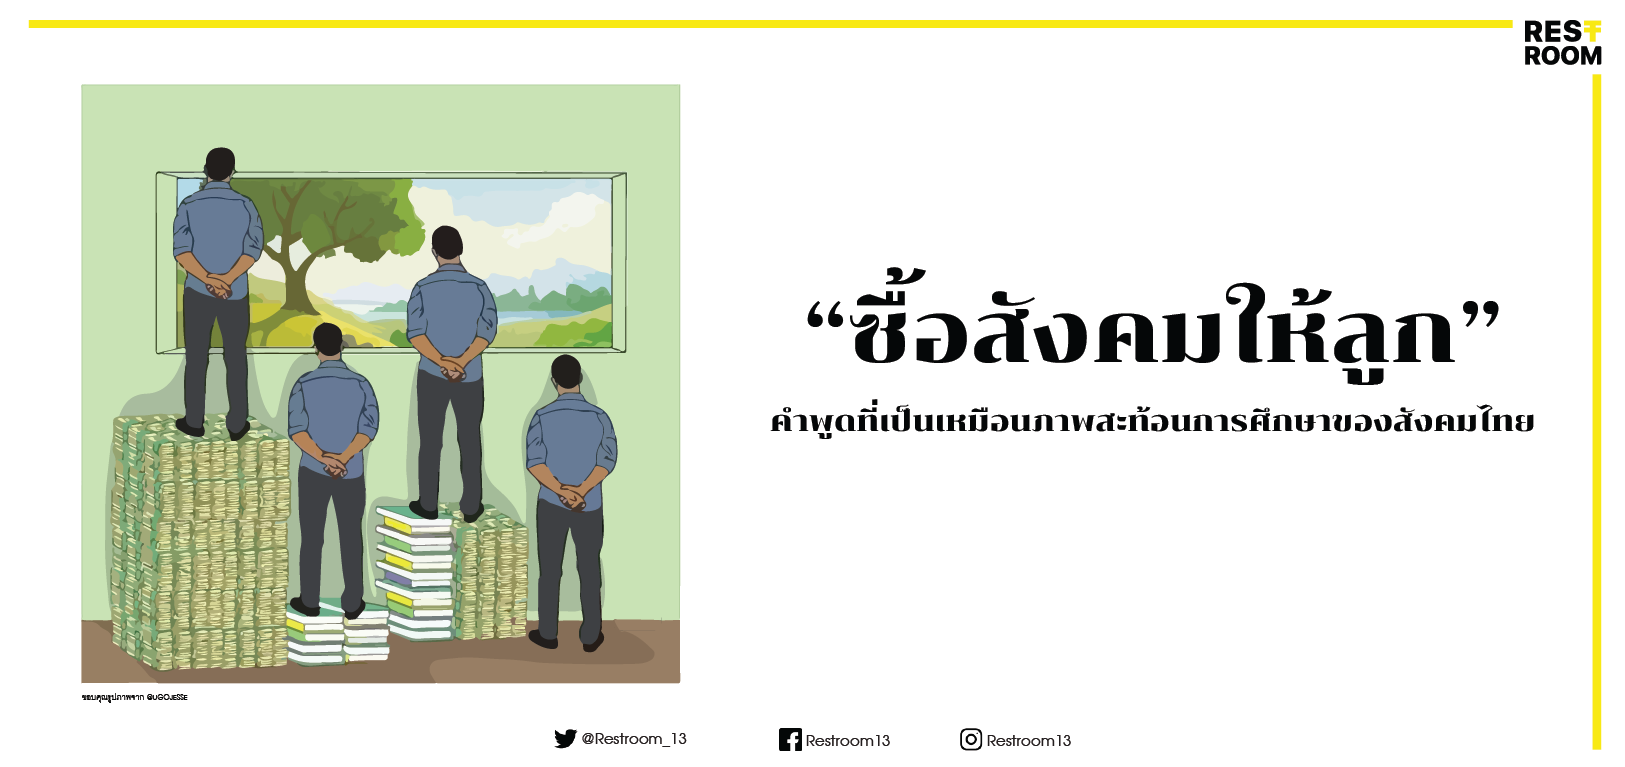 “ซื้อสังคมให้ลูก” คำพูดที่เป็นเหมือนภาพสะท้อนการศึกษาของสังคมไทย